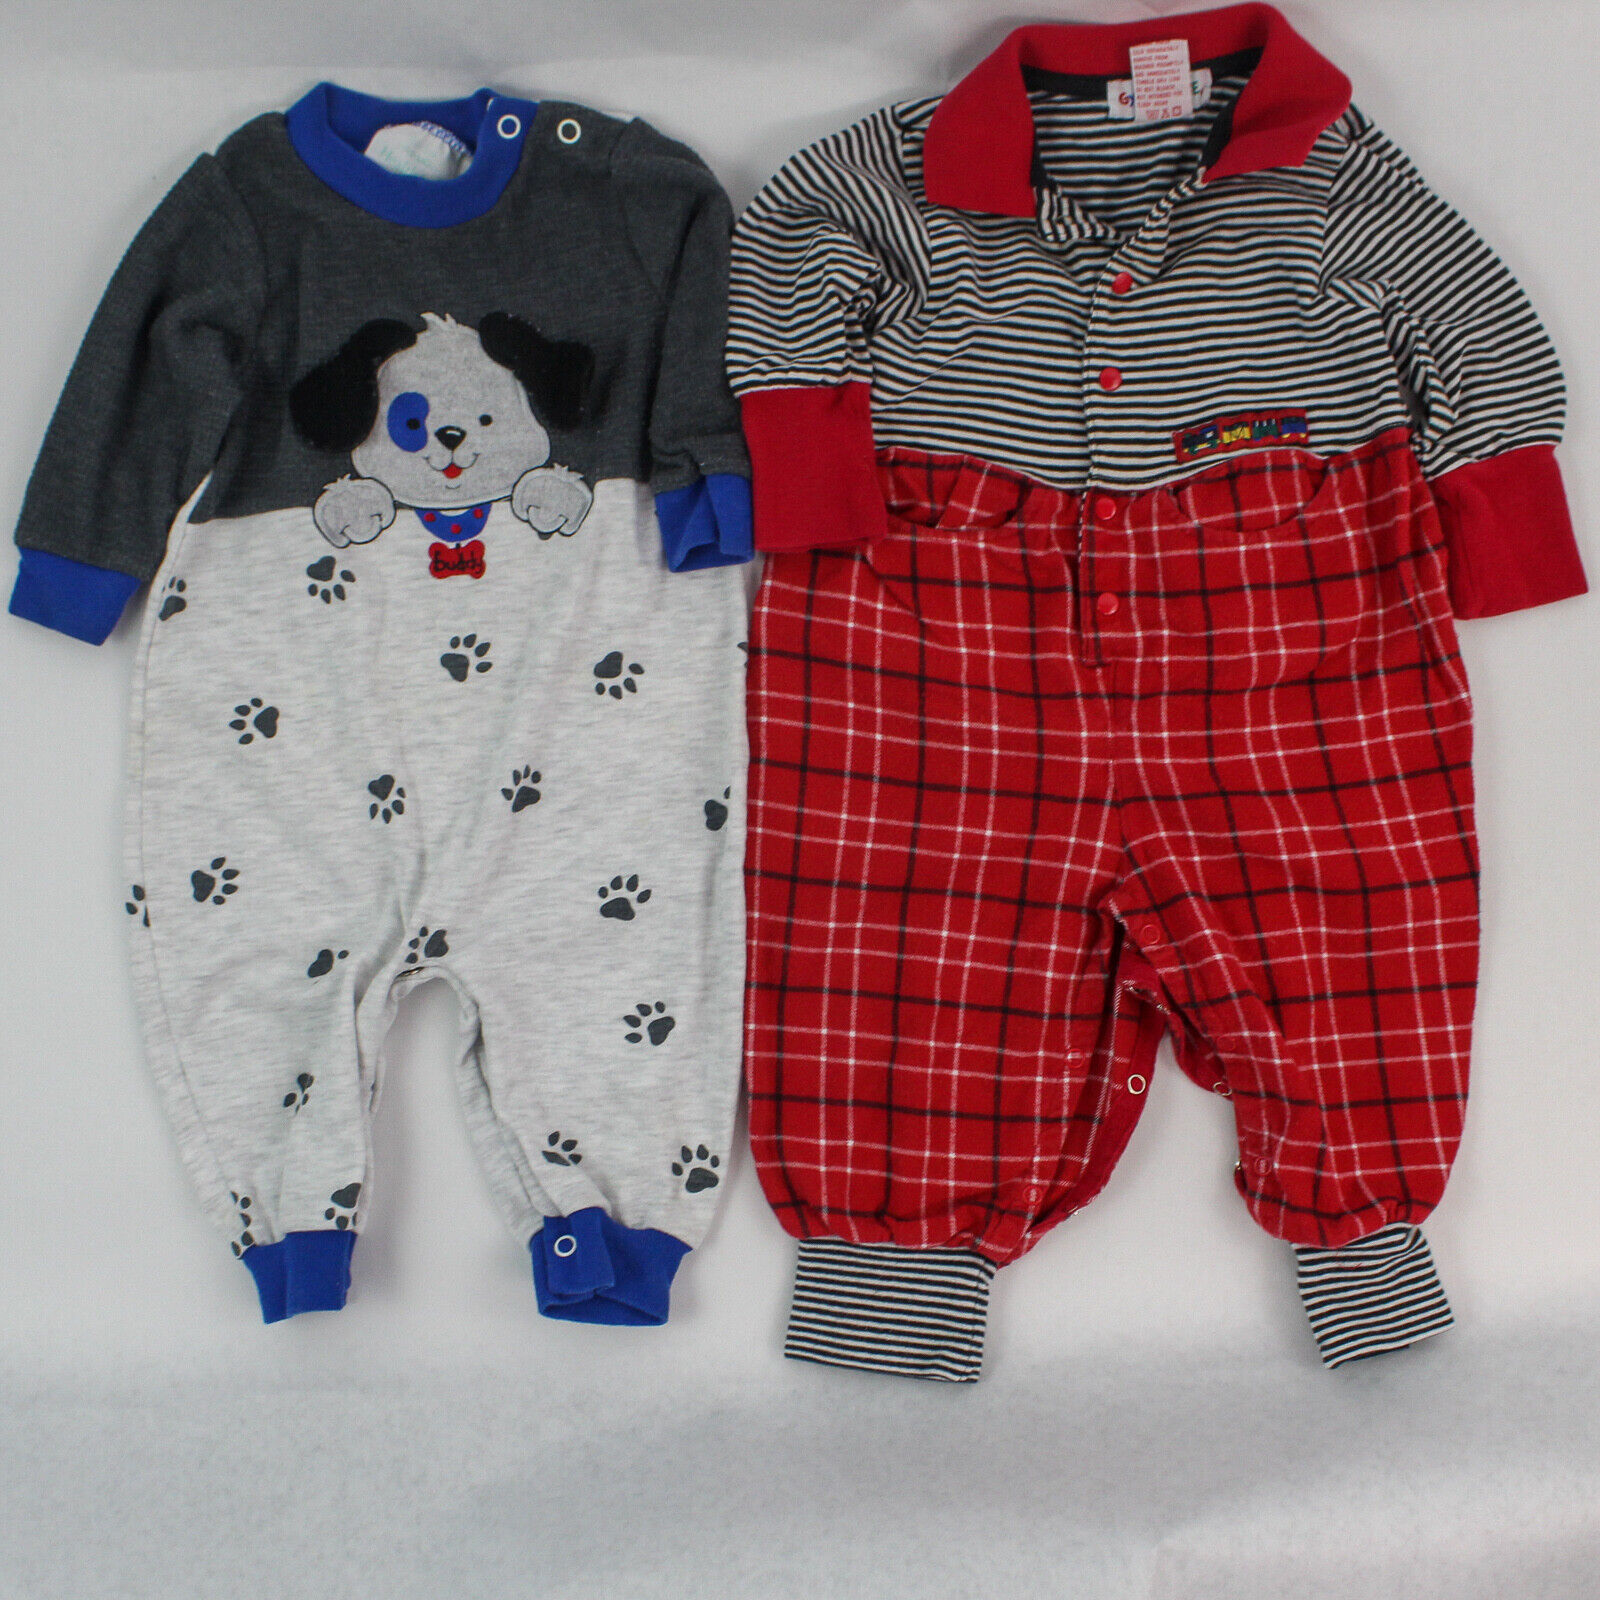 Lot of 2 Infant Boy\'s Size 6-9 Months Garments One Piece Gymboree Healthtex